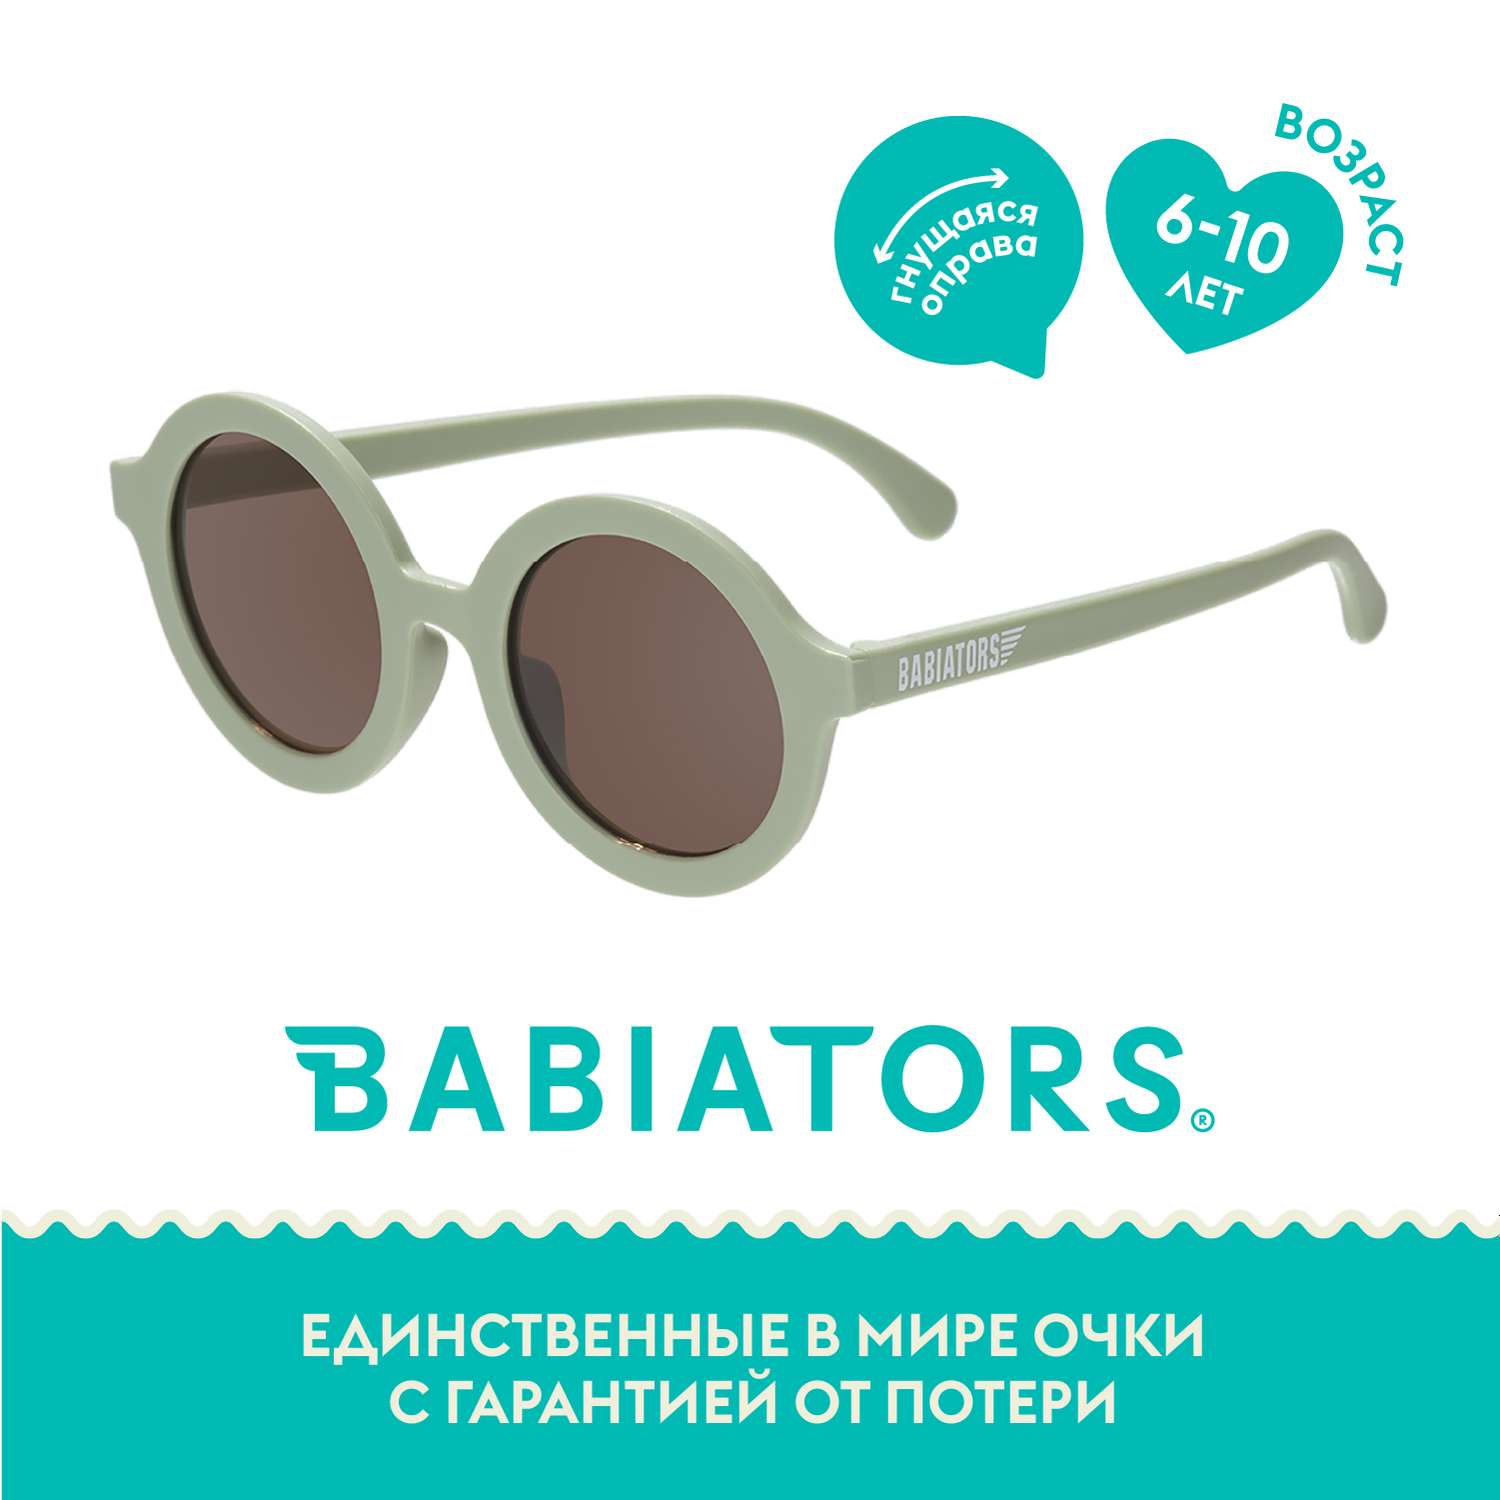 Детские солнцезащитные очки Babiators Round Солнечный лес 6+ лет RND-009 - фото 2